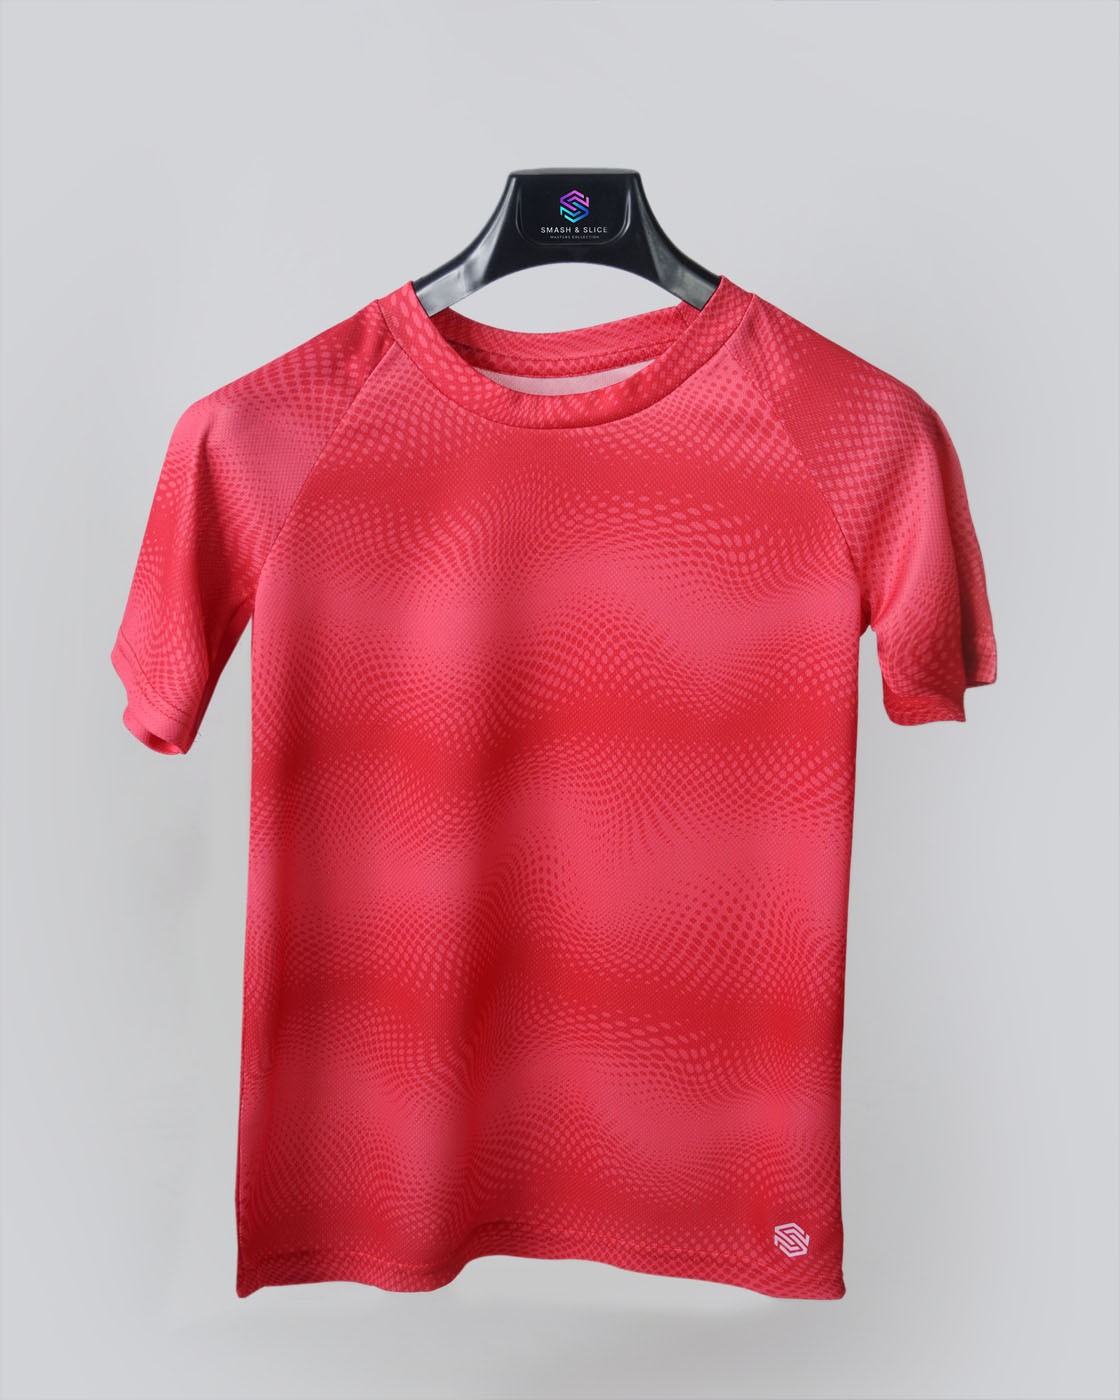 Erkek Çocuk Antrenman Spor Forma Tshirt - Kırmızı Desenli Baskılı